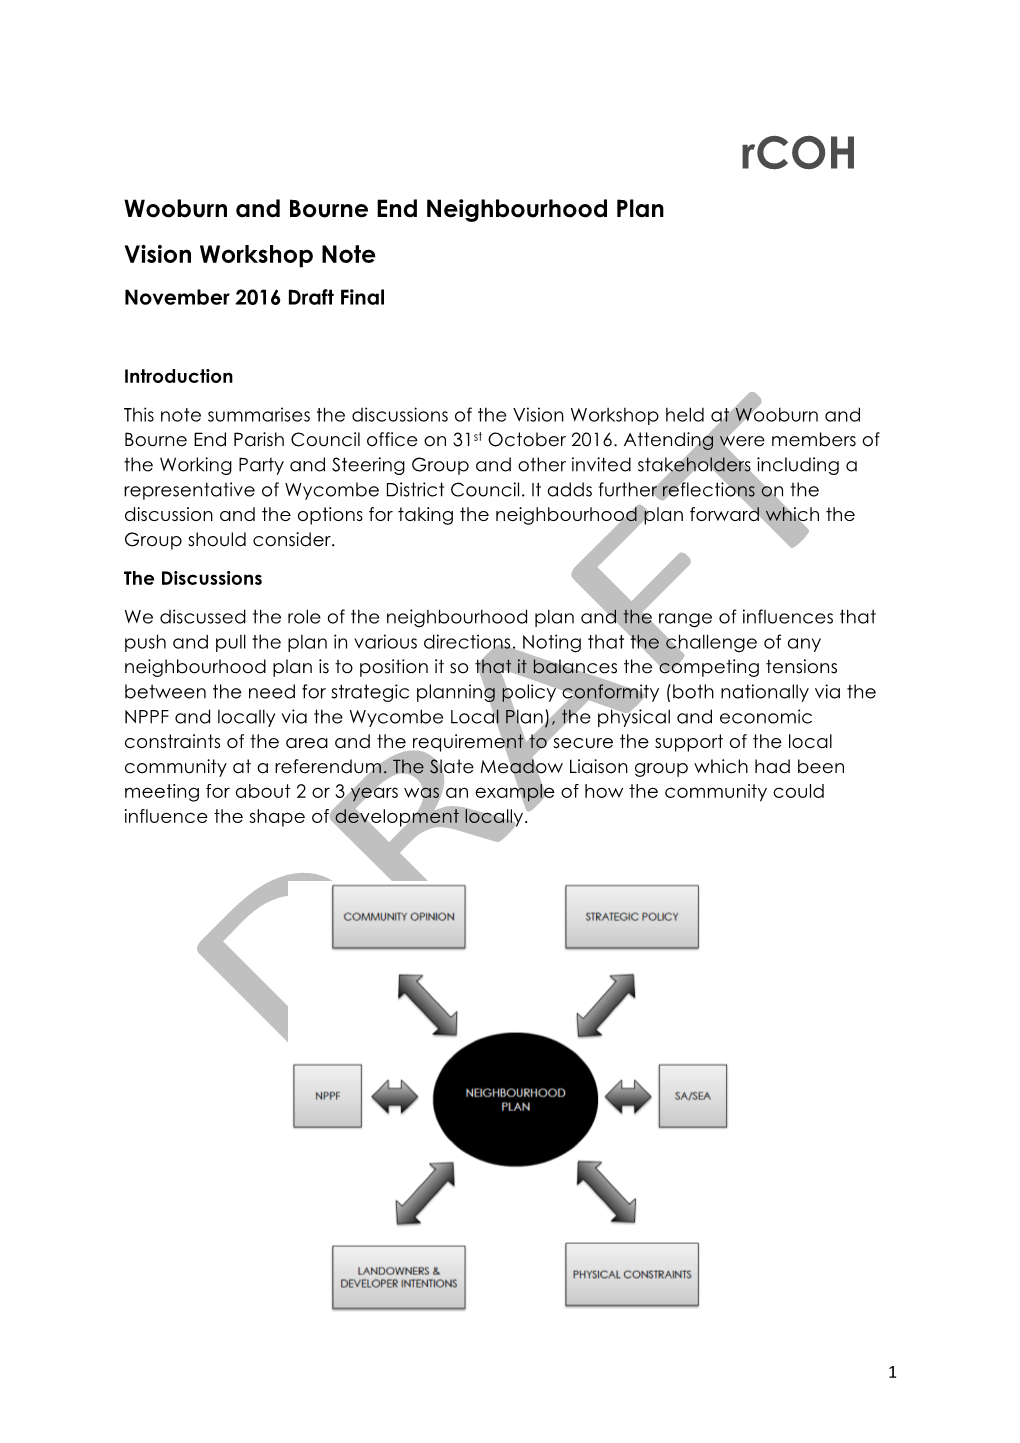 Vision Workshop Note